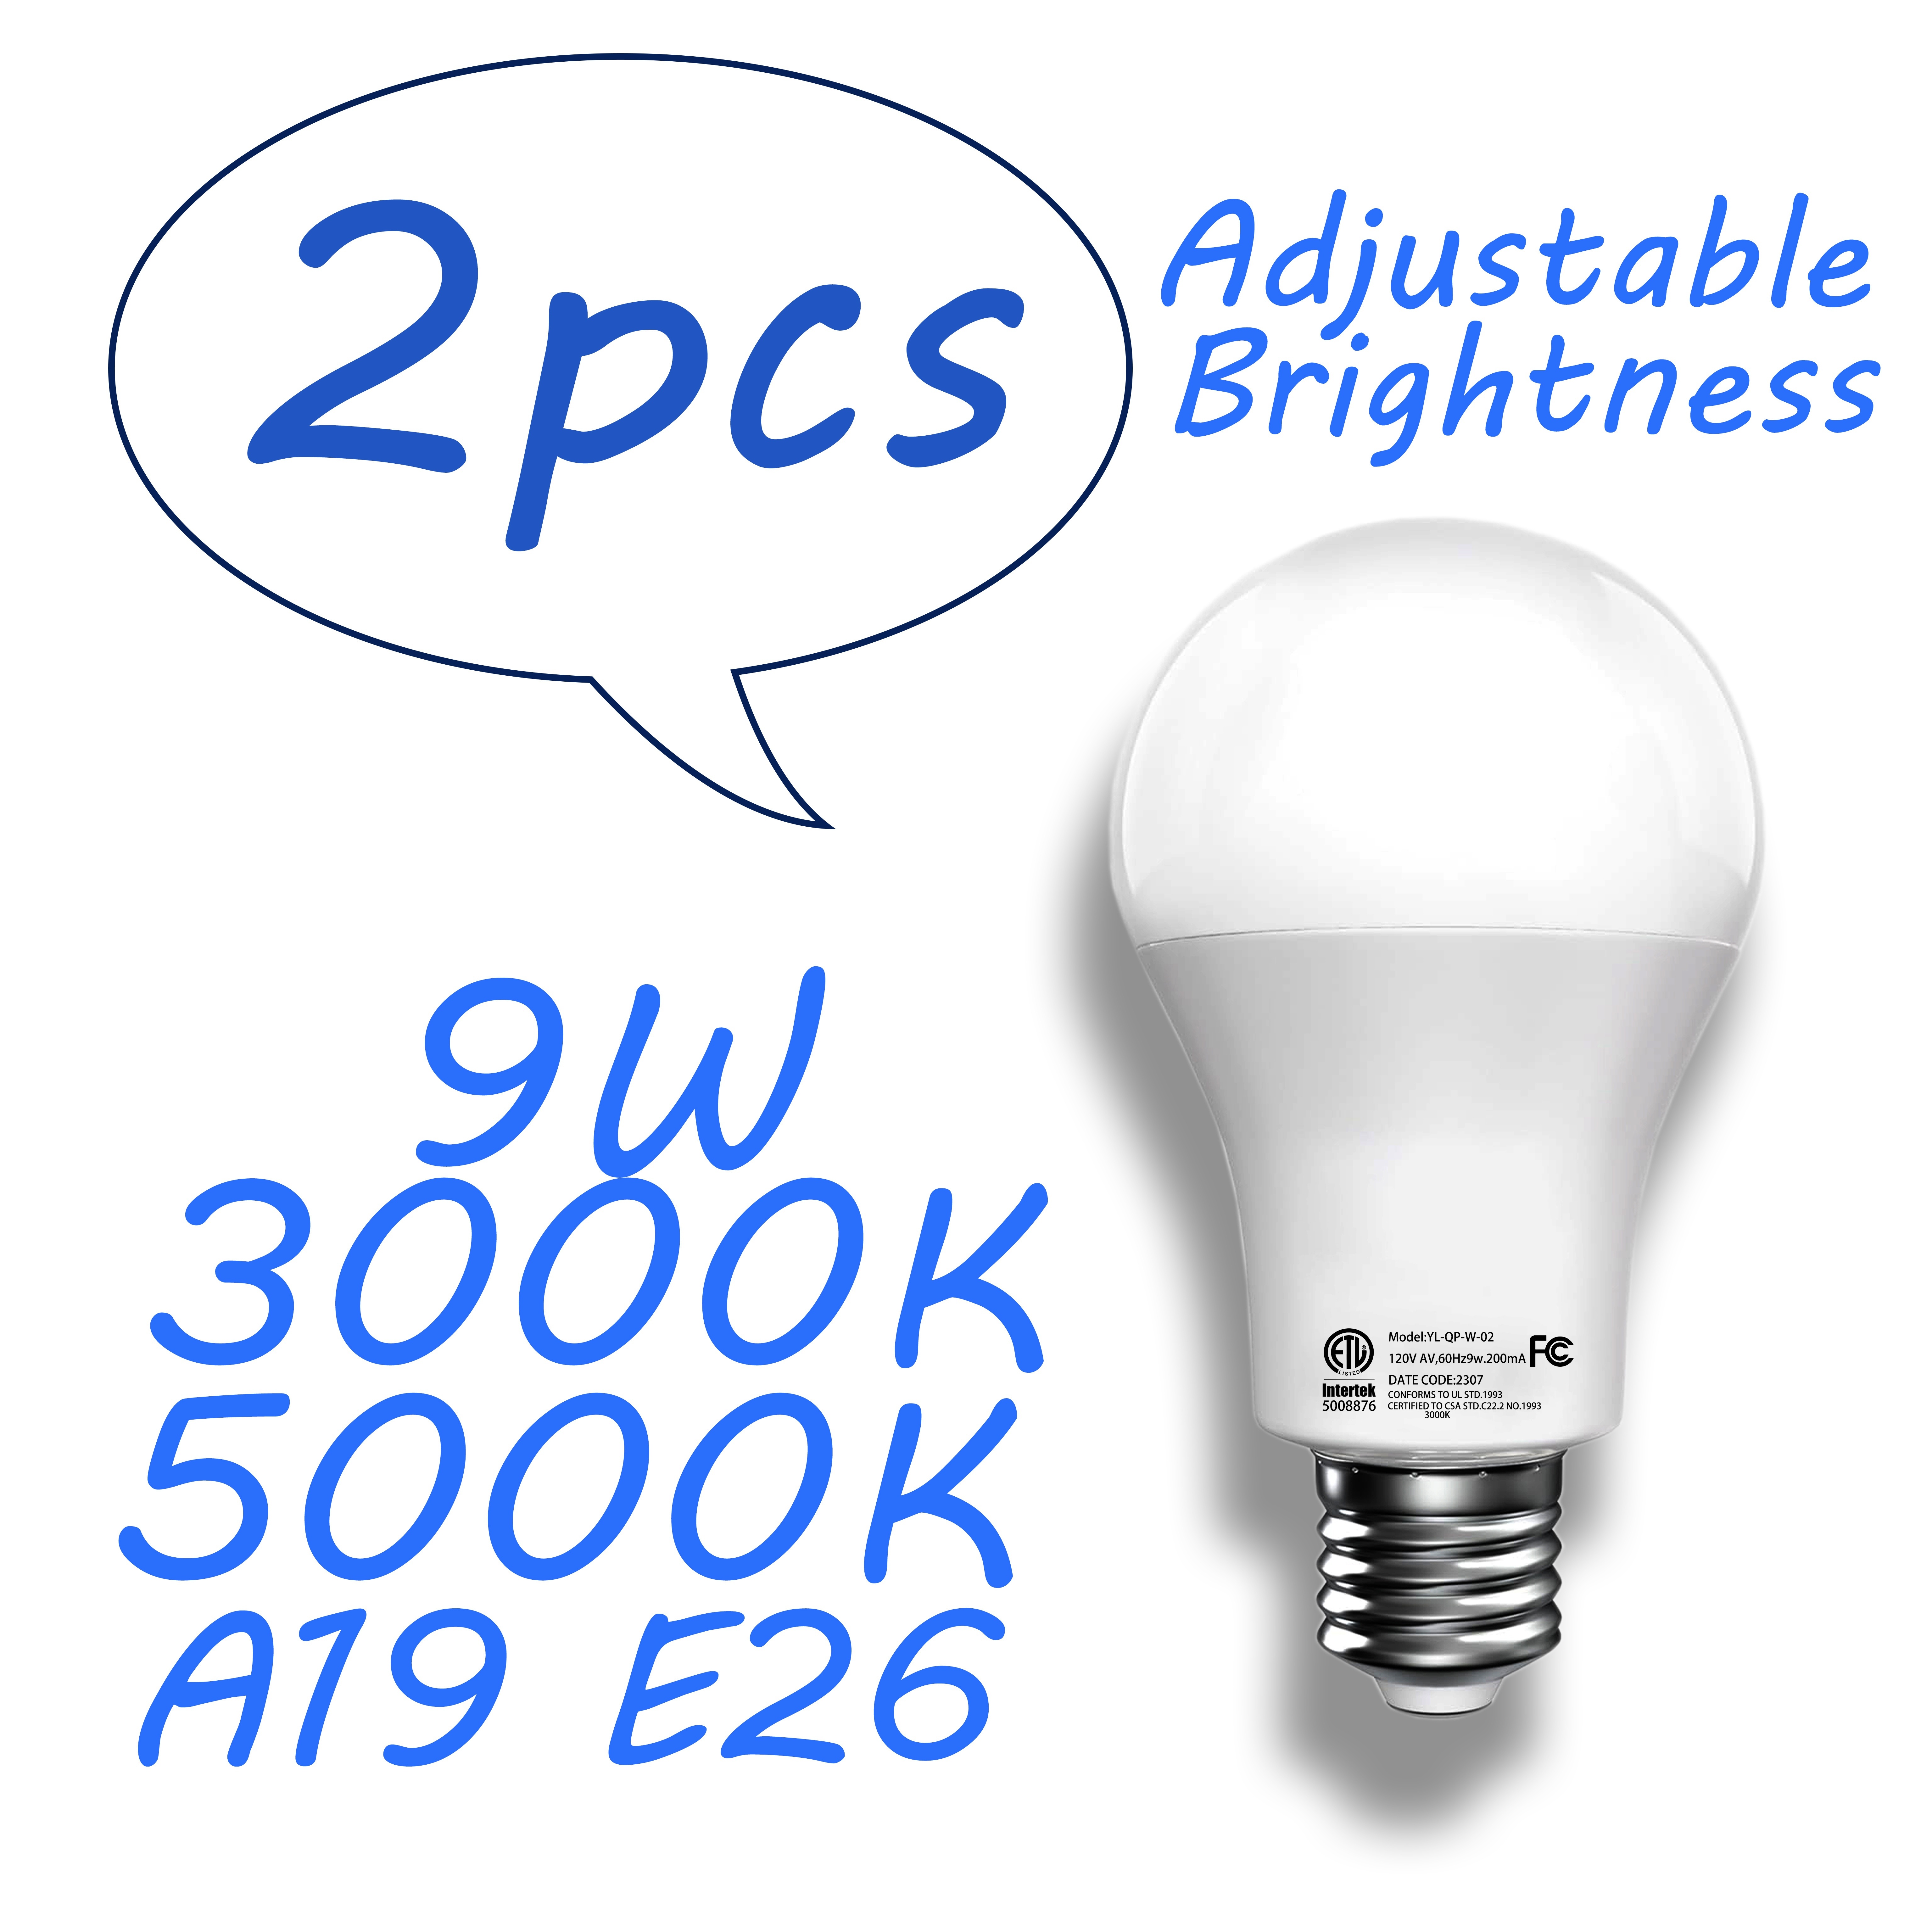 Lepro Bombillas LED regulables equivalentes a 60 vatios, 9.5 W 800 lúmenes,  blanco cálido suave 2700 K, base media estándar A19 E26, certificación UL